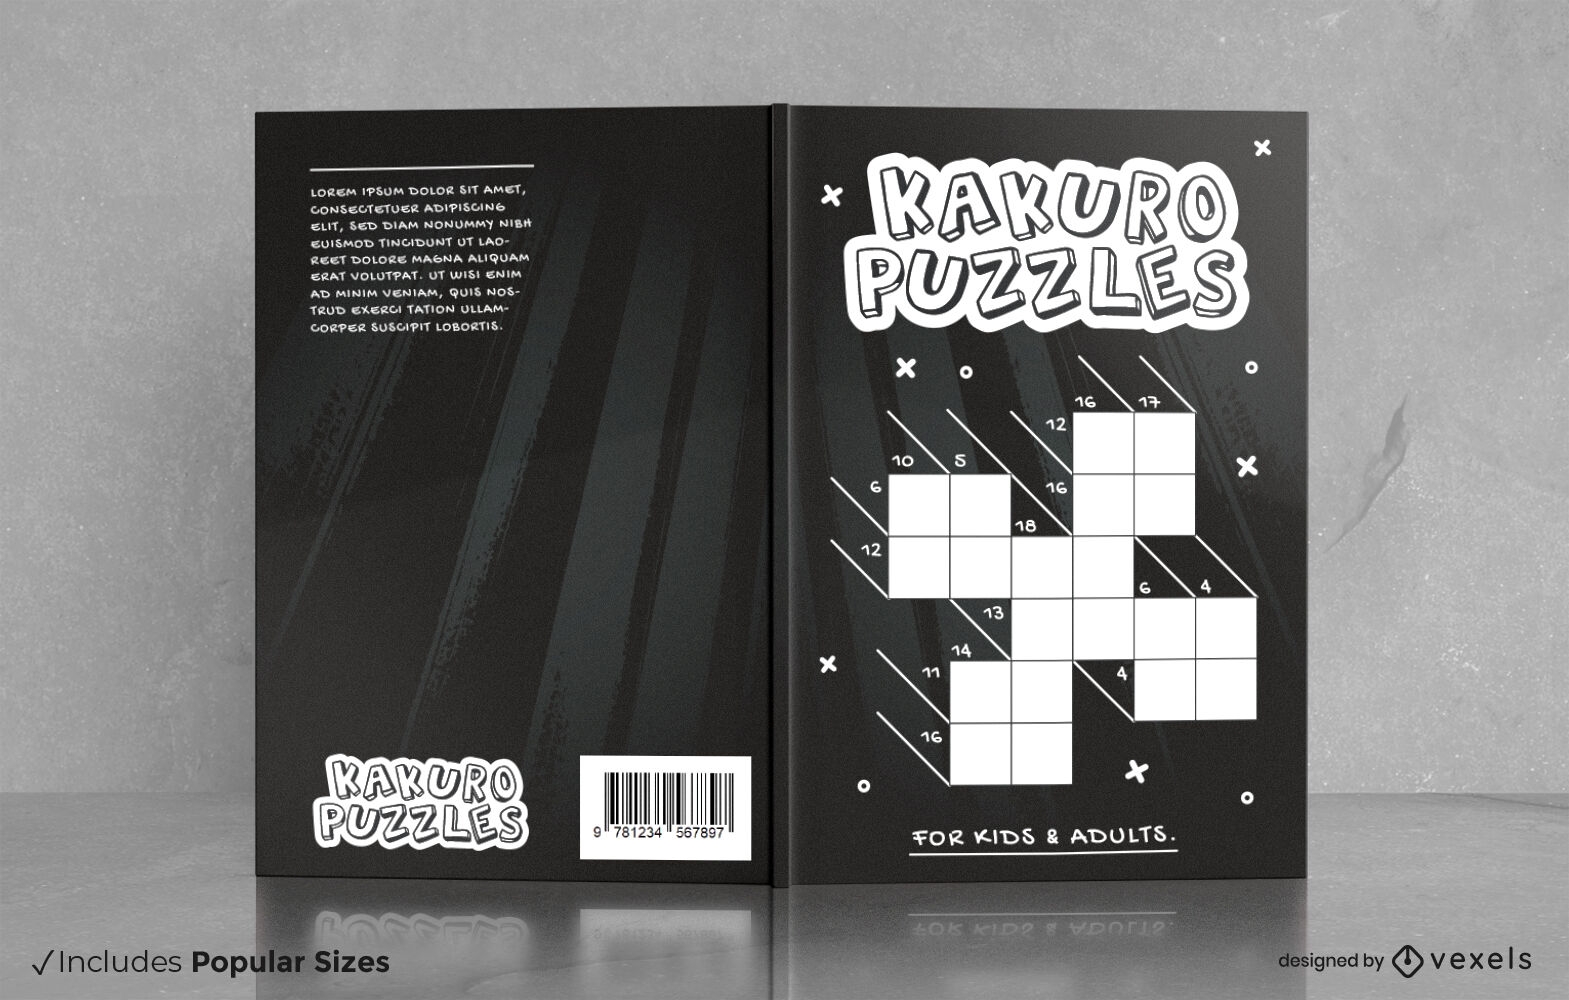 Kakuro puzzles hobby book cover design